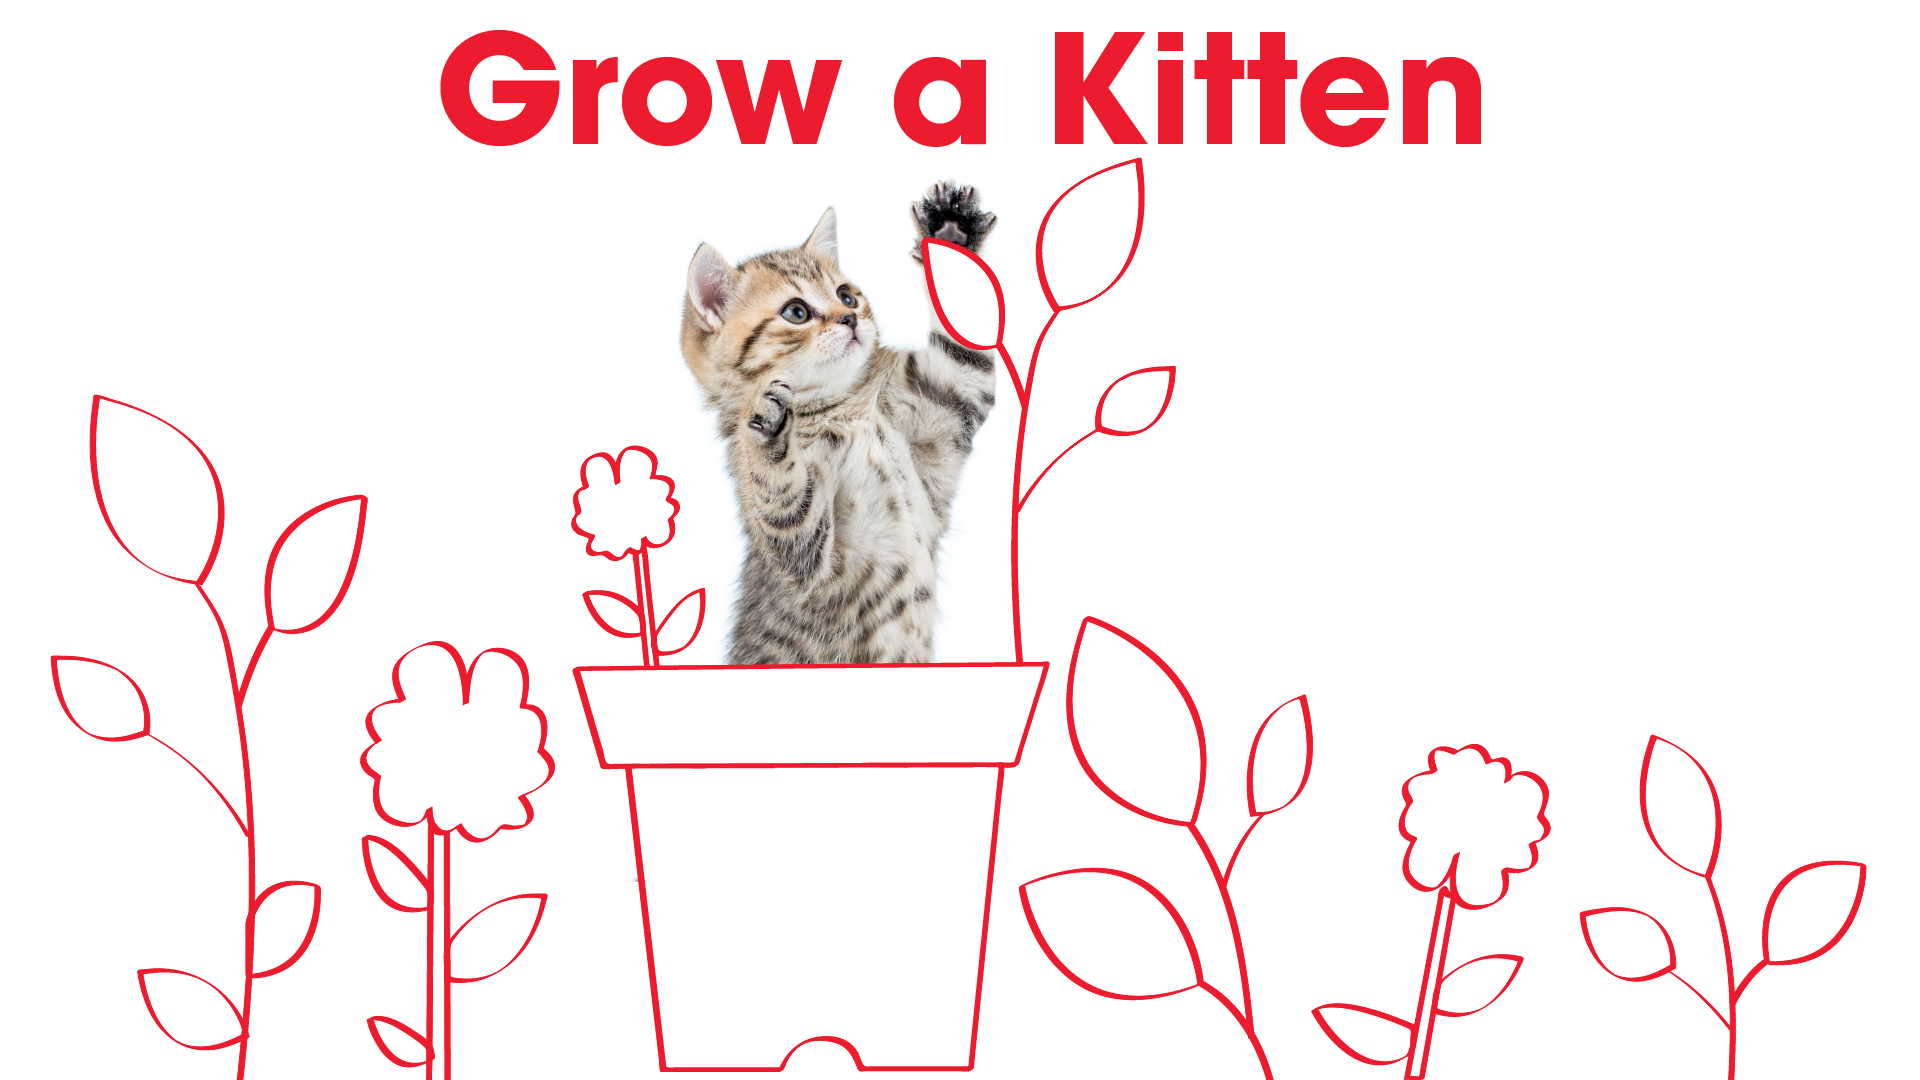 Real kitten in a drawn flower pot